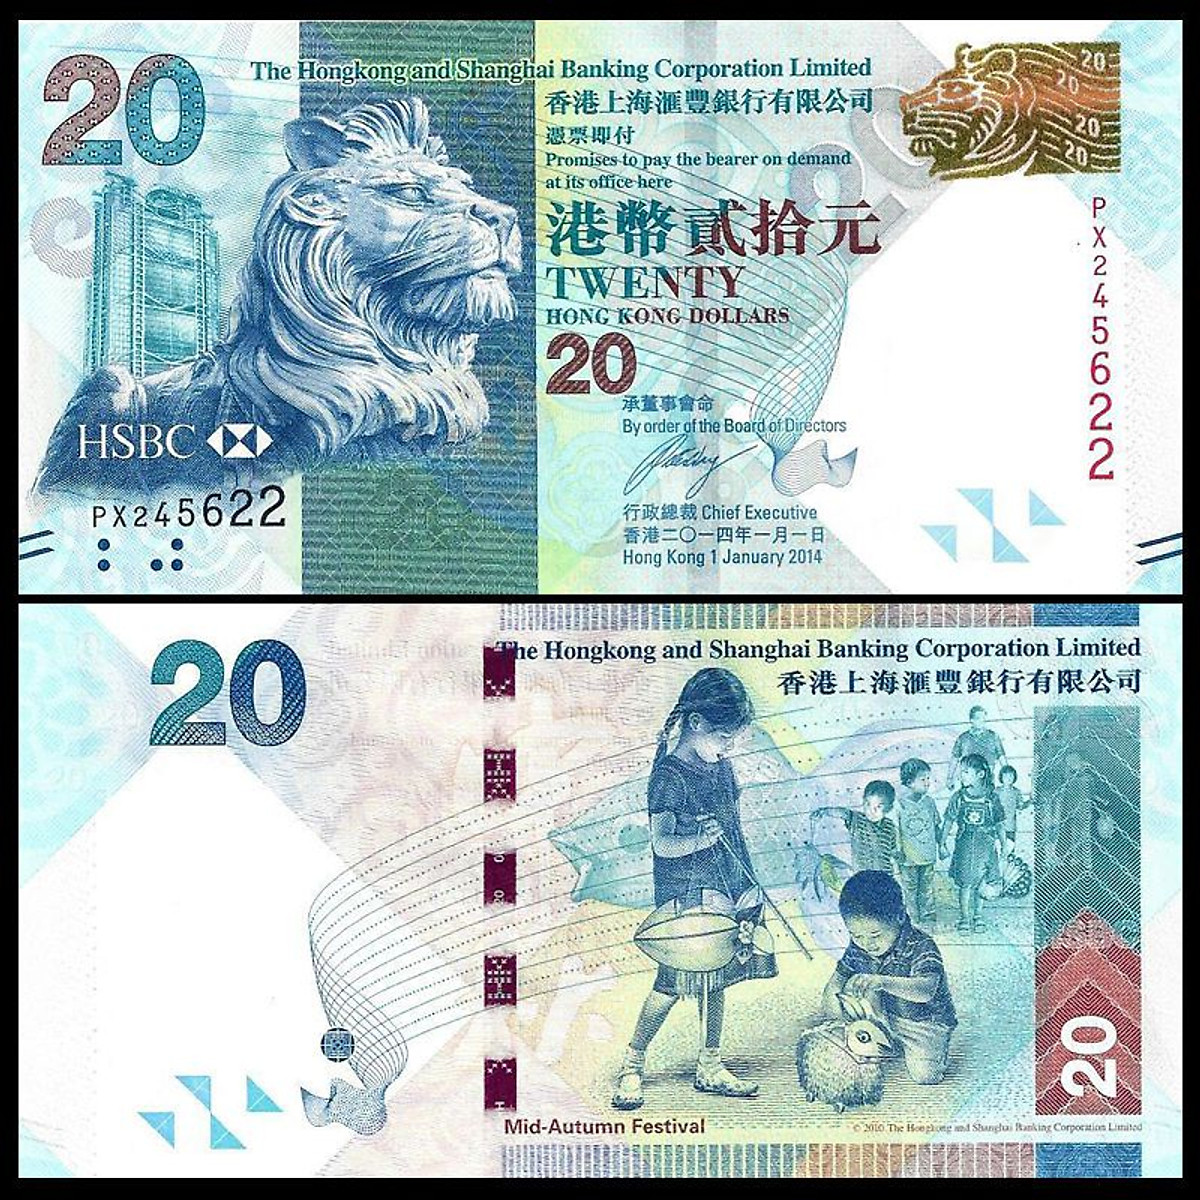 Tiền HongKong mệnh giá 20 dollars hình ảnh đầu Sư Tử - Tiền mới keng 100% - Tặng túi nilon bảo quản